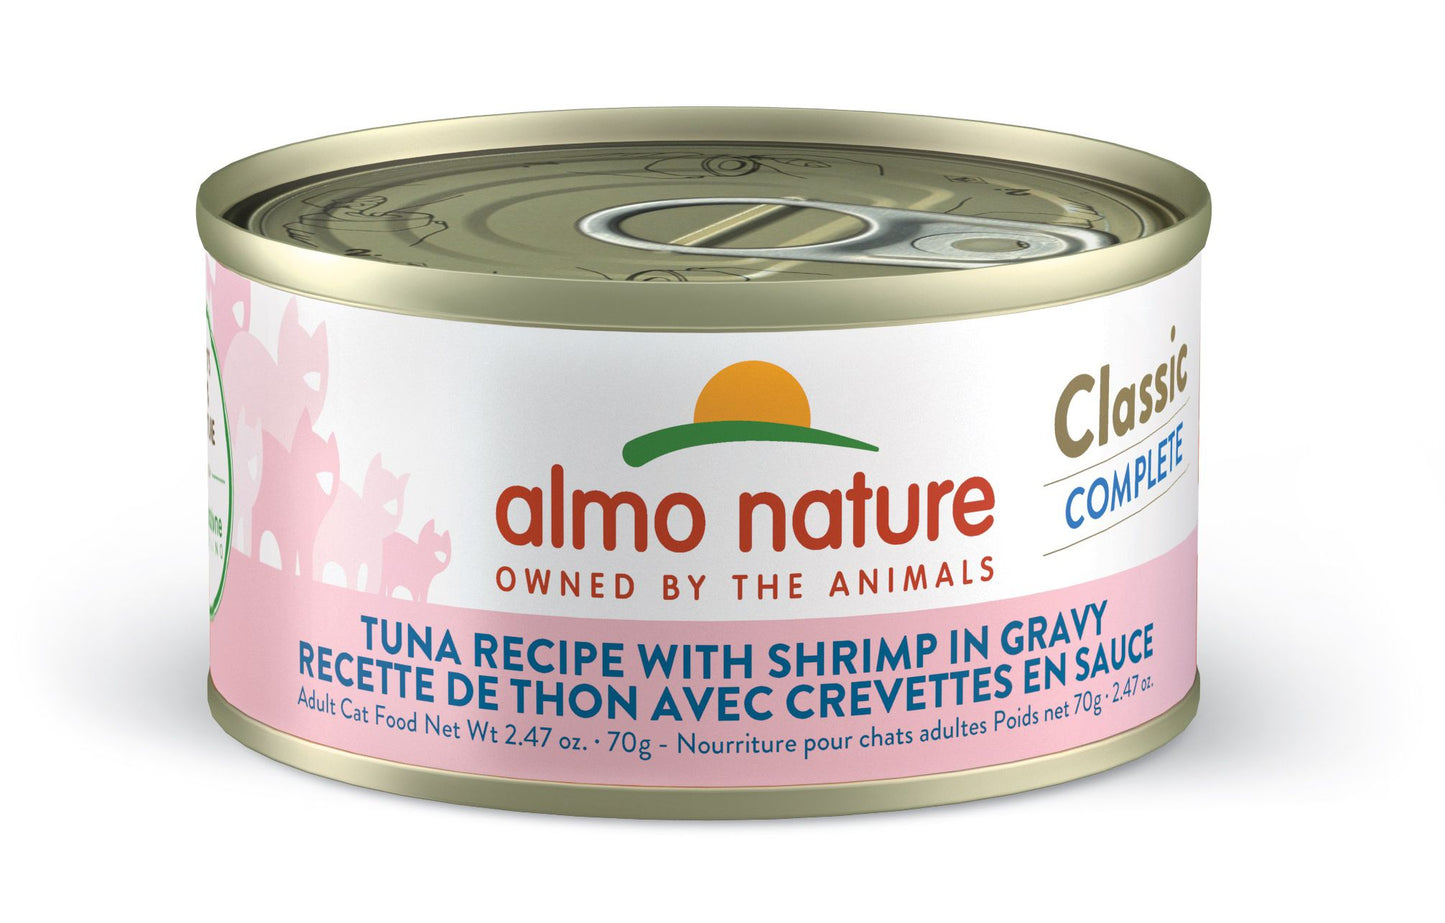 Classic Complete Tuna Recipe with Shrimp in Gravy